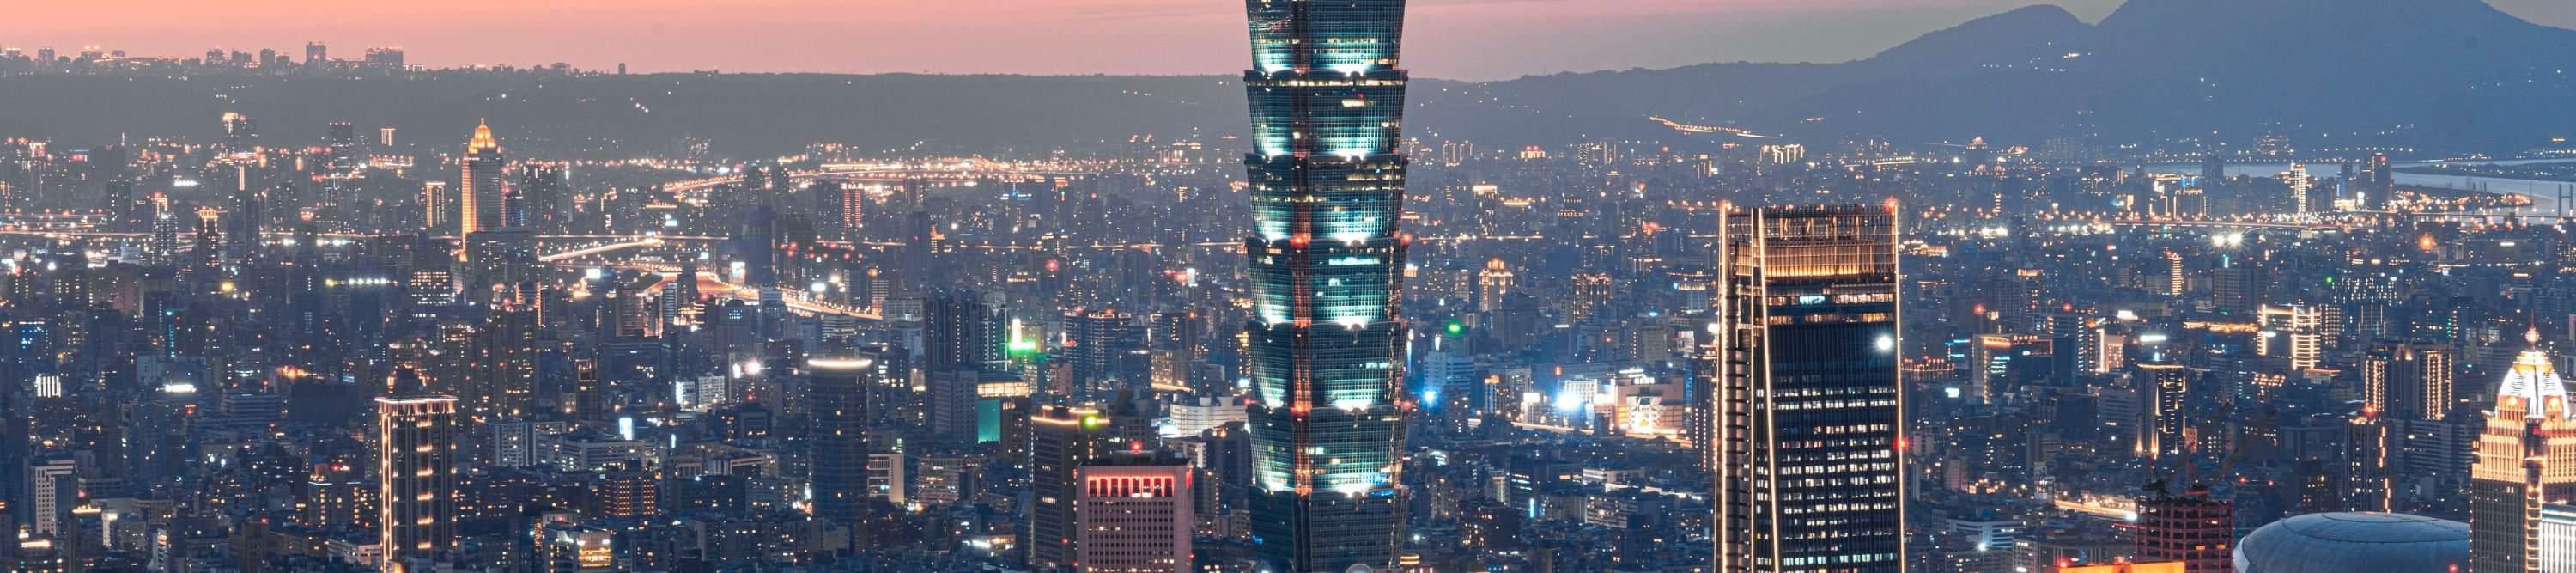 Taipei 101 sunset